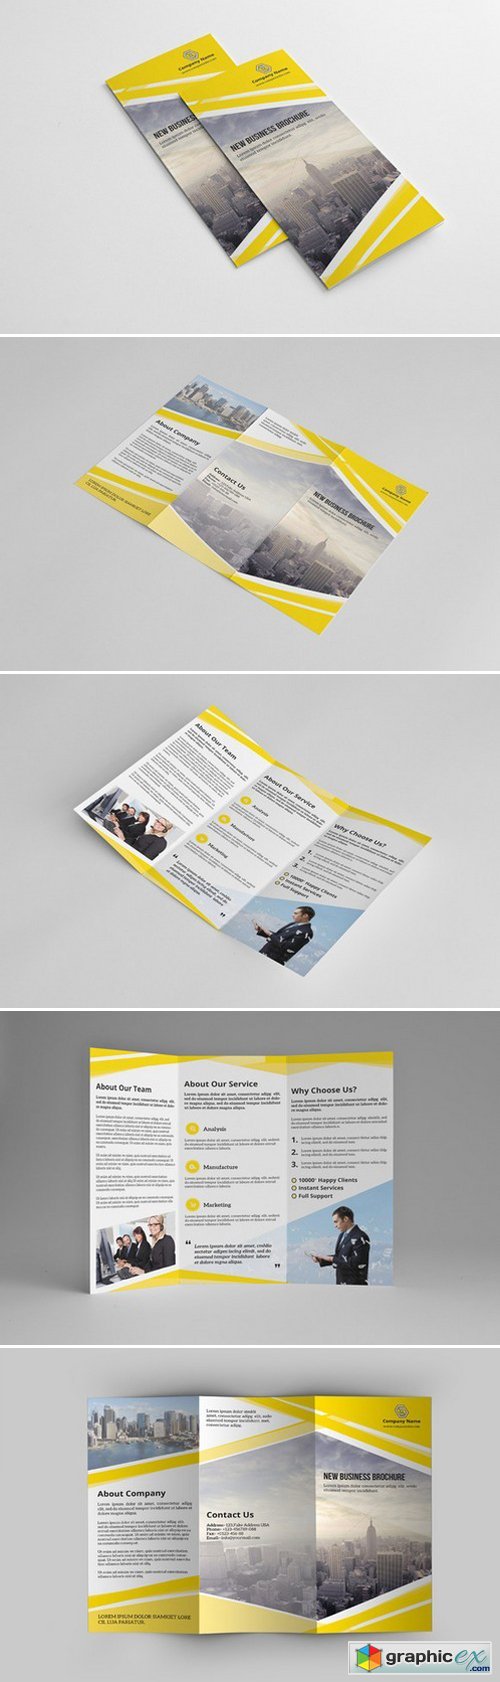 InDesign: Business Brochure-V183